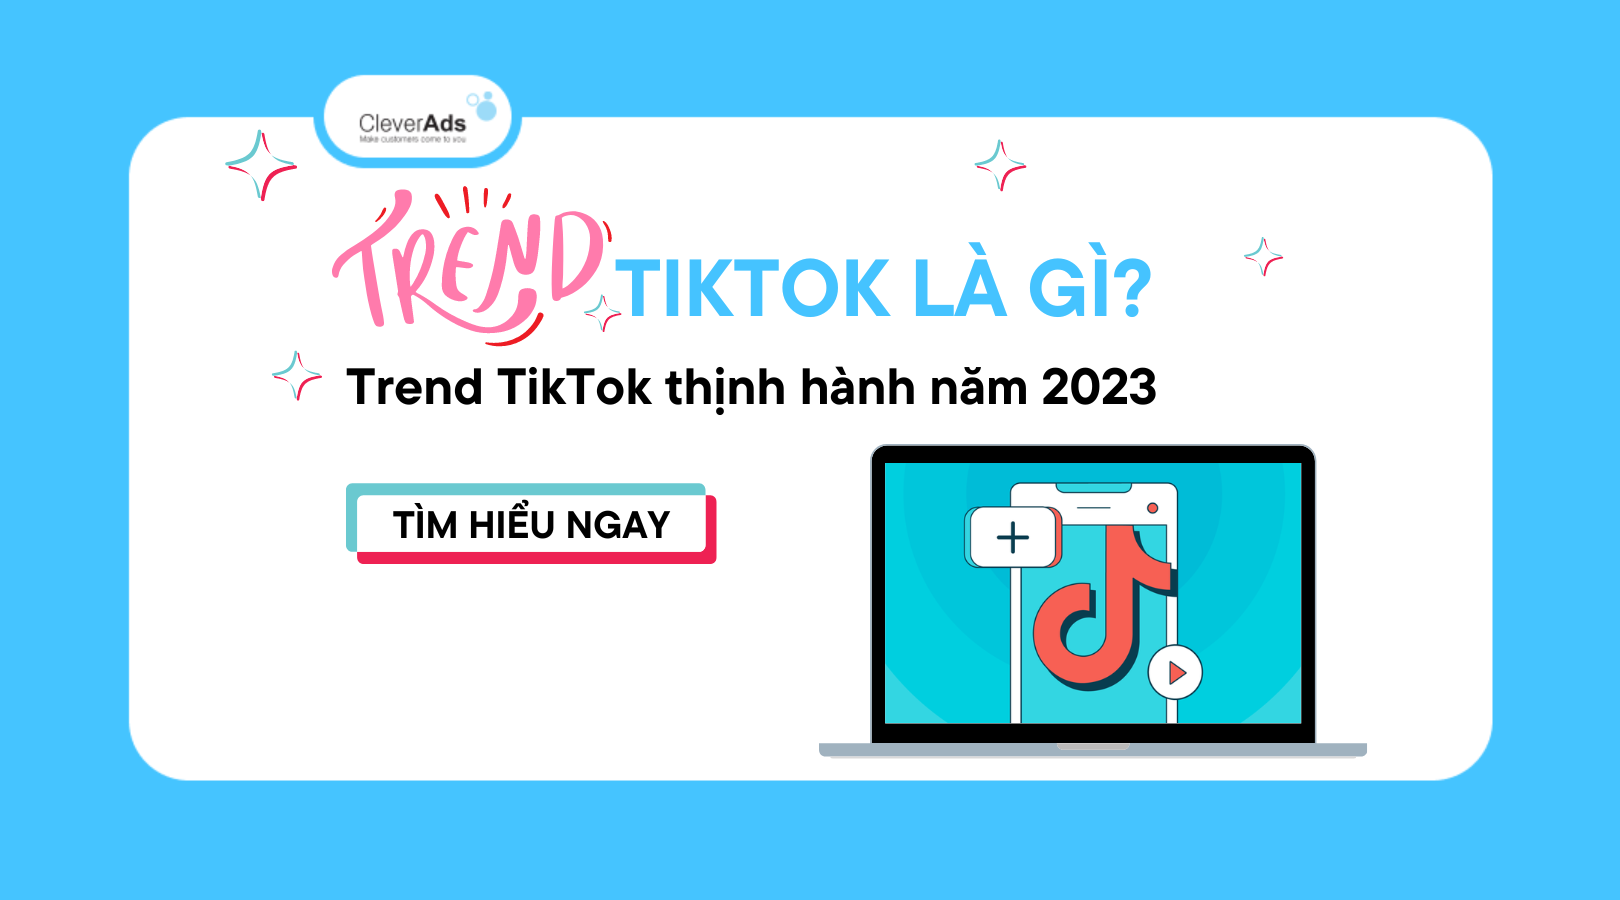 Trend TikTok là gì? Trend TikTok thịnh hành năm 2023